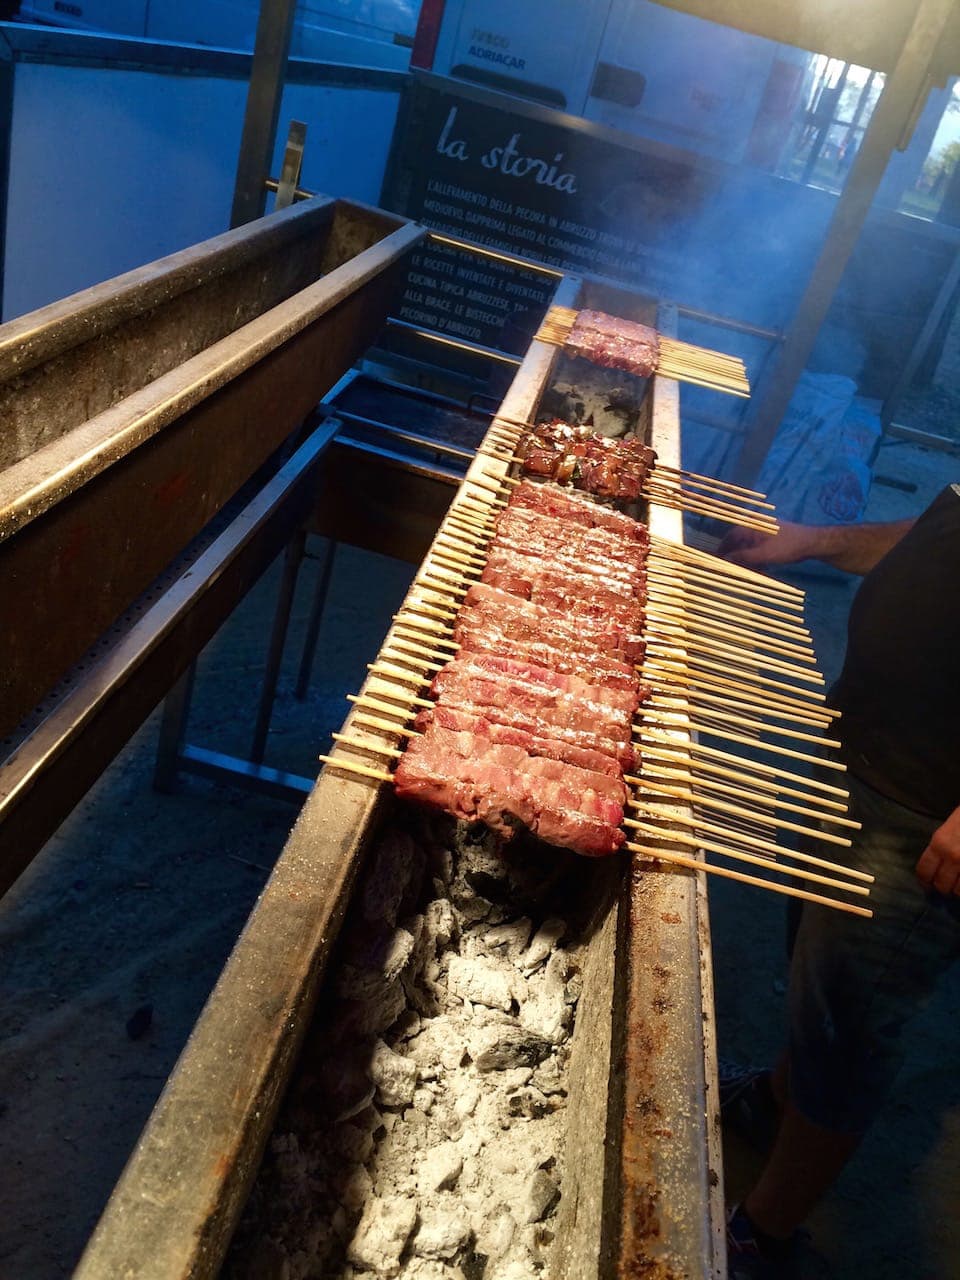 Arrosticini abruzzesi: tipici spiedini di carne di pecora arrostiti sulla griglia